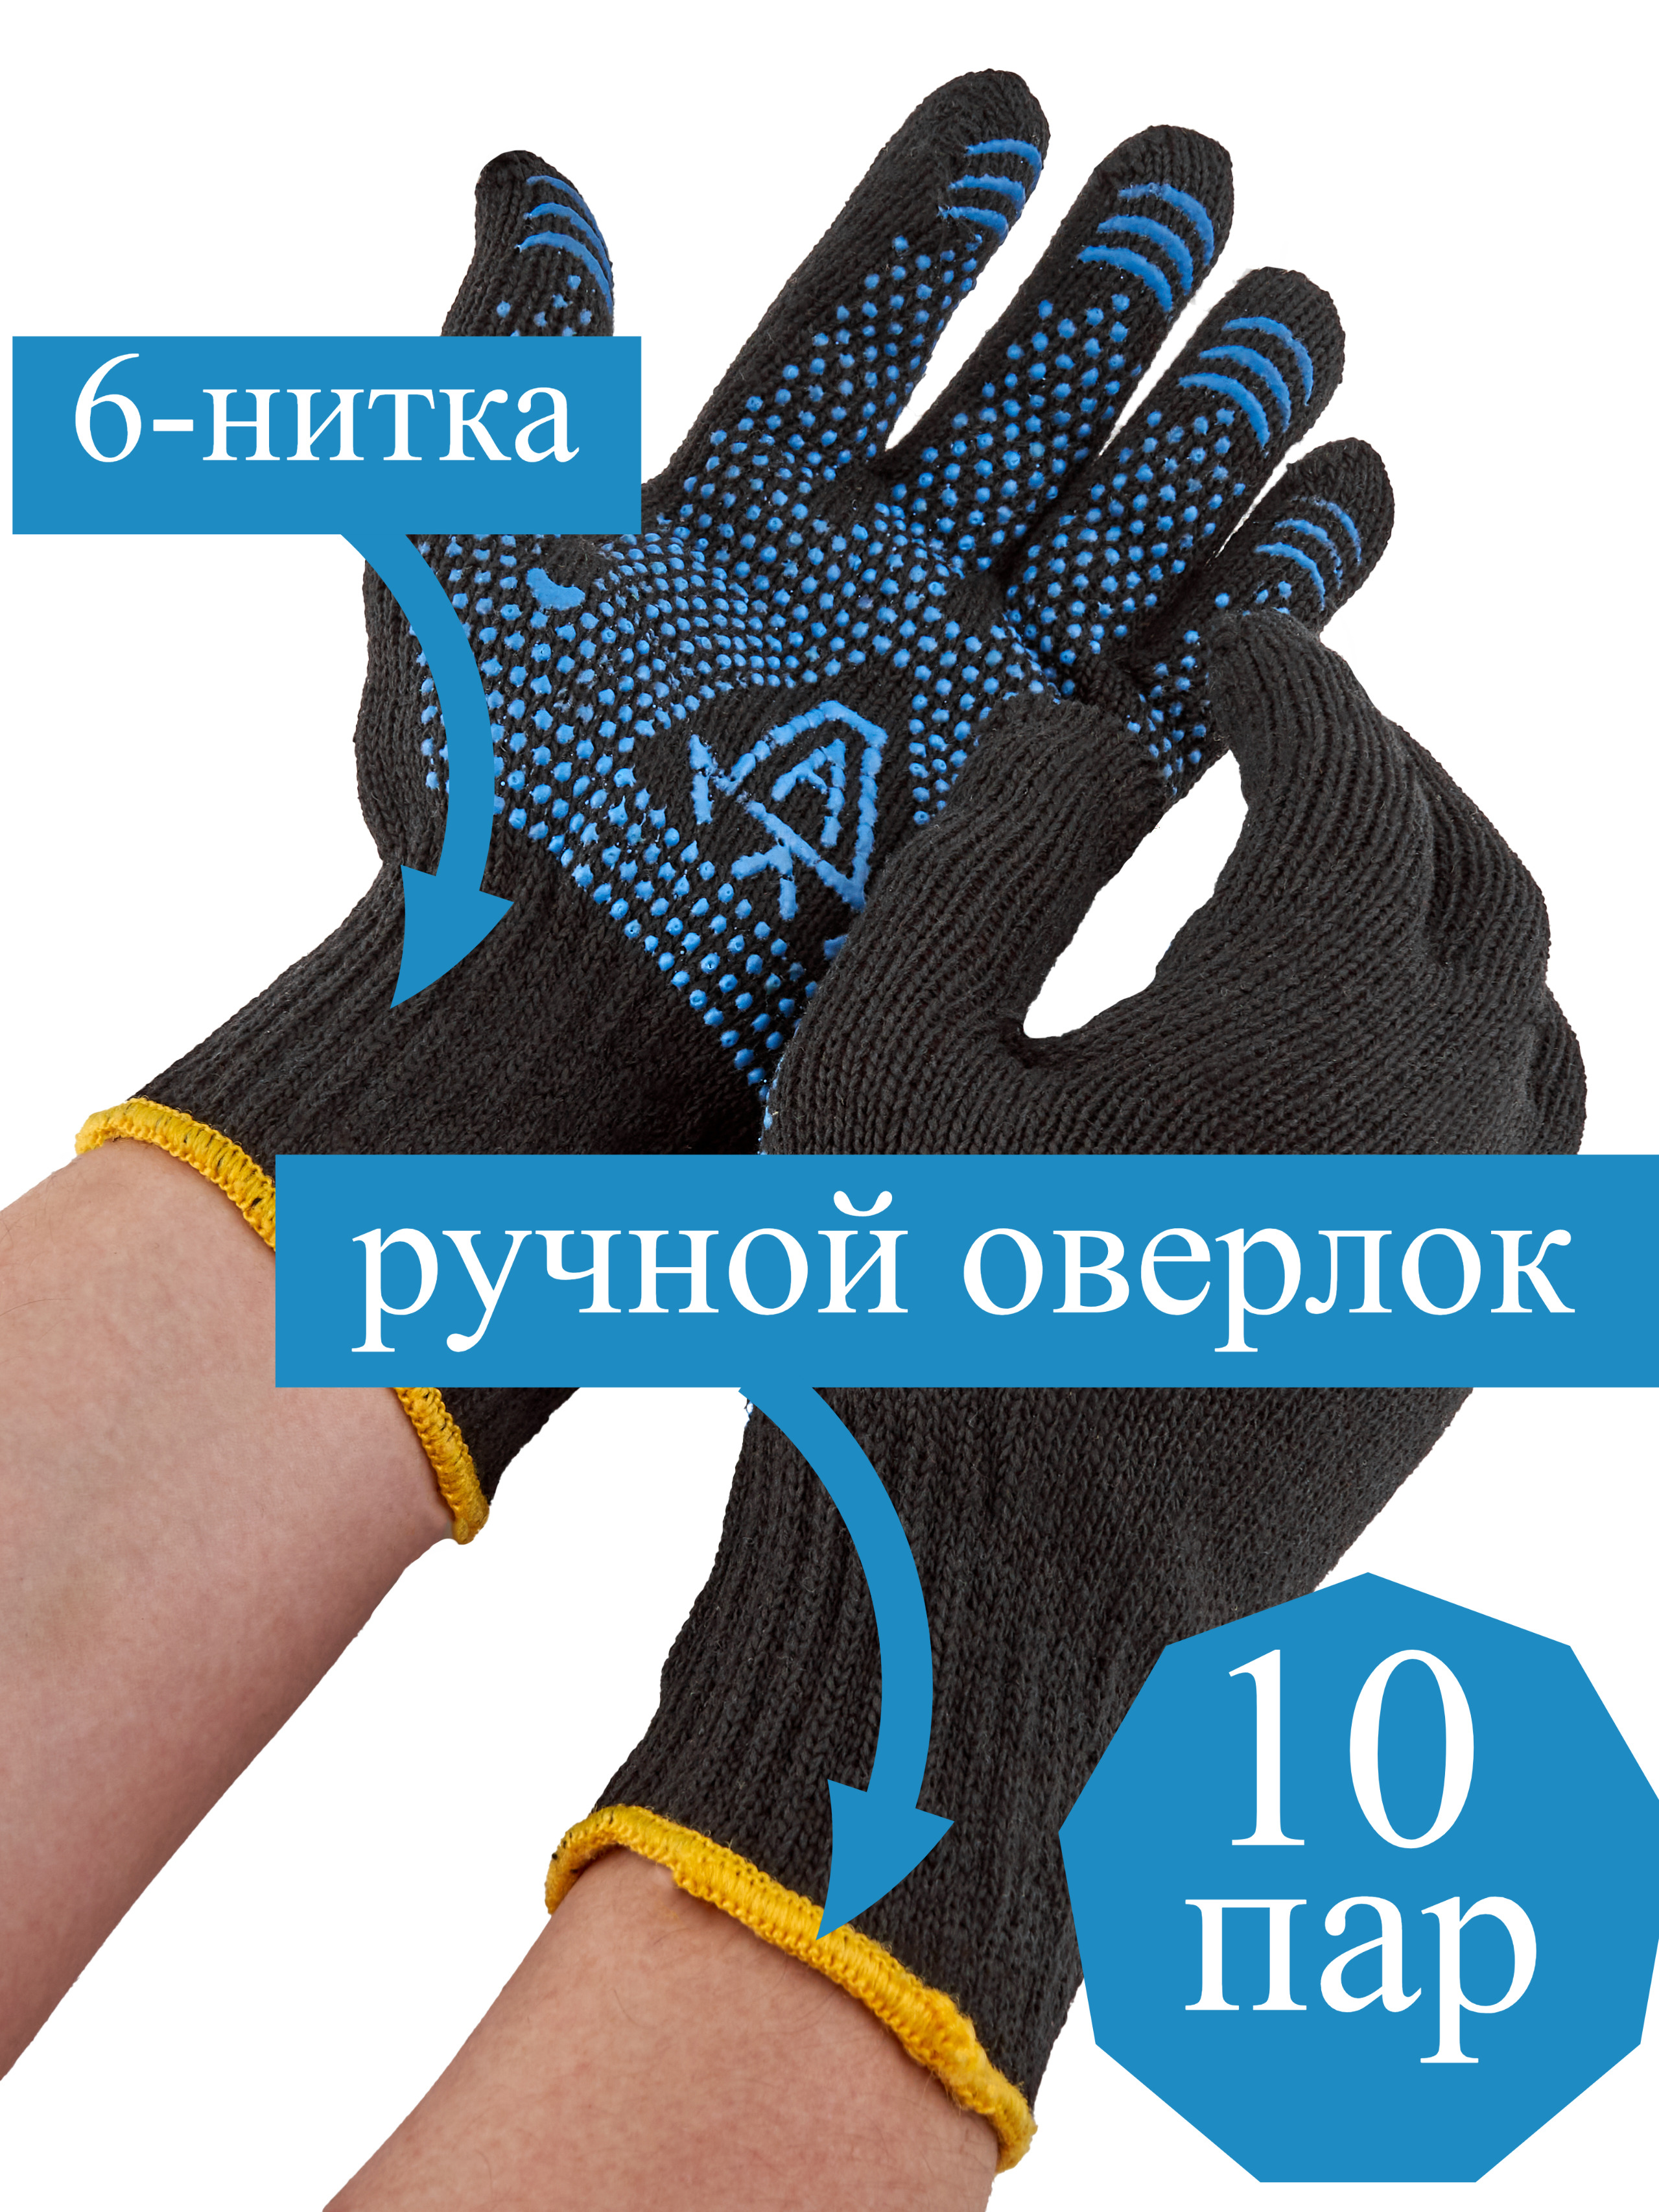 Перчатки L&G рабочие прочные хб с пвх, хозяйственные, 10 пар перчатки хозяйственные lomberta экстра прочные s